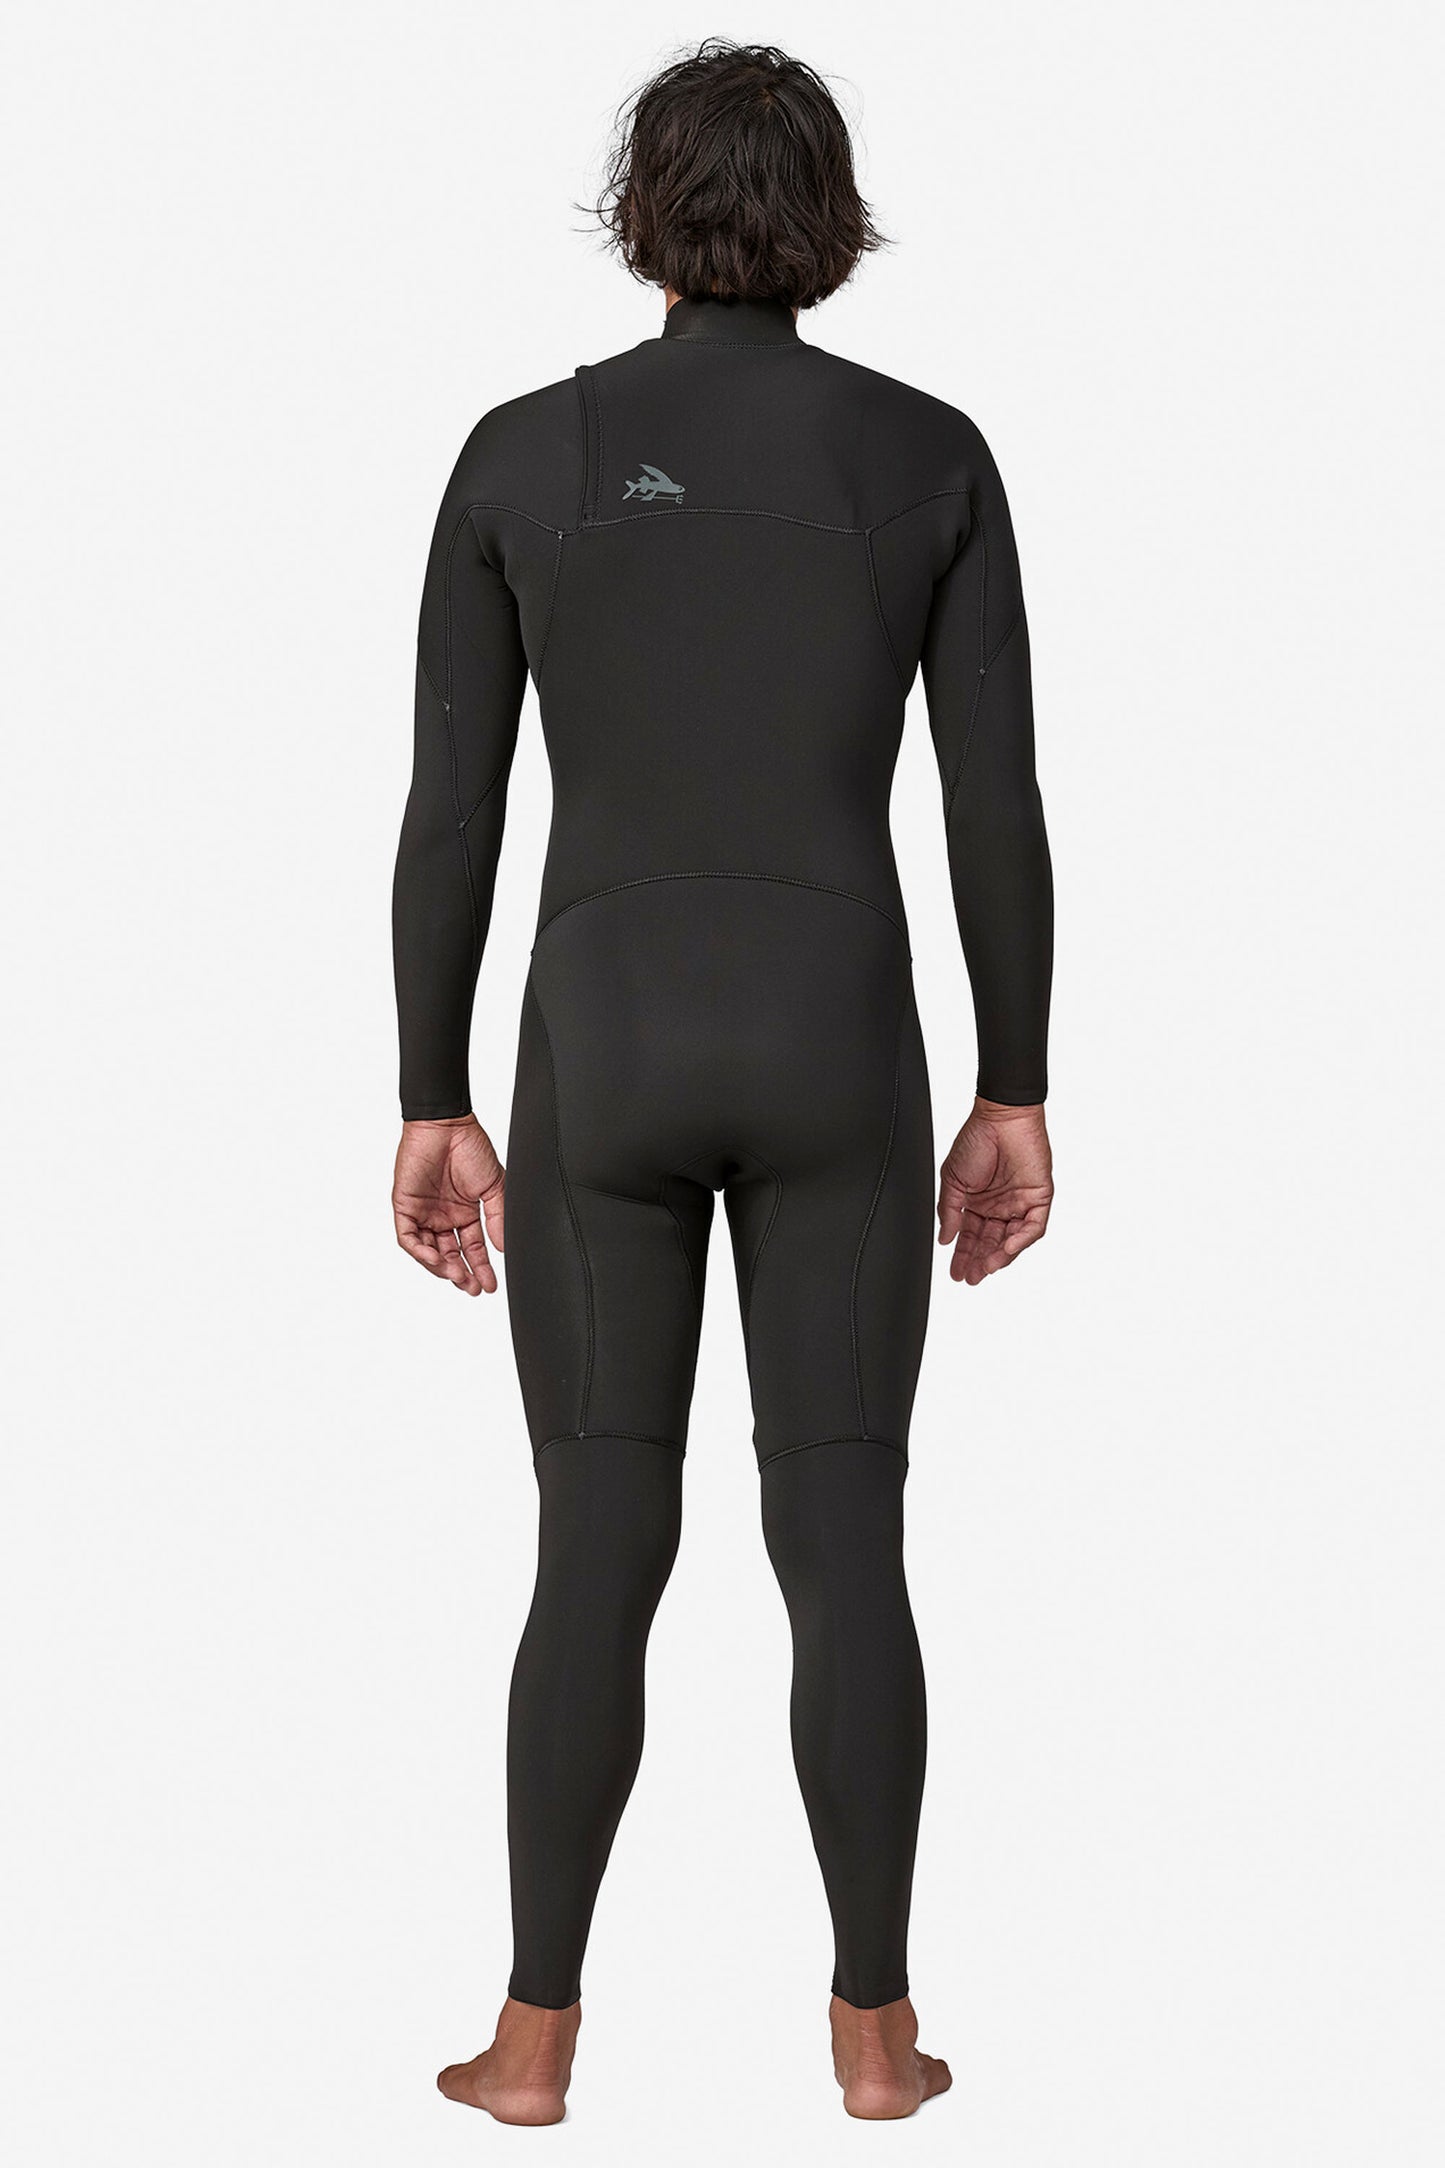 Pukas-Surf-Shop-Patagonia-Wetsuit-r2-yulex-regulator-men-black